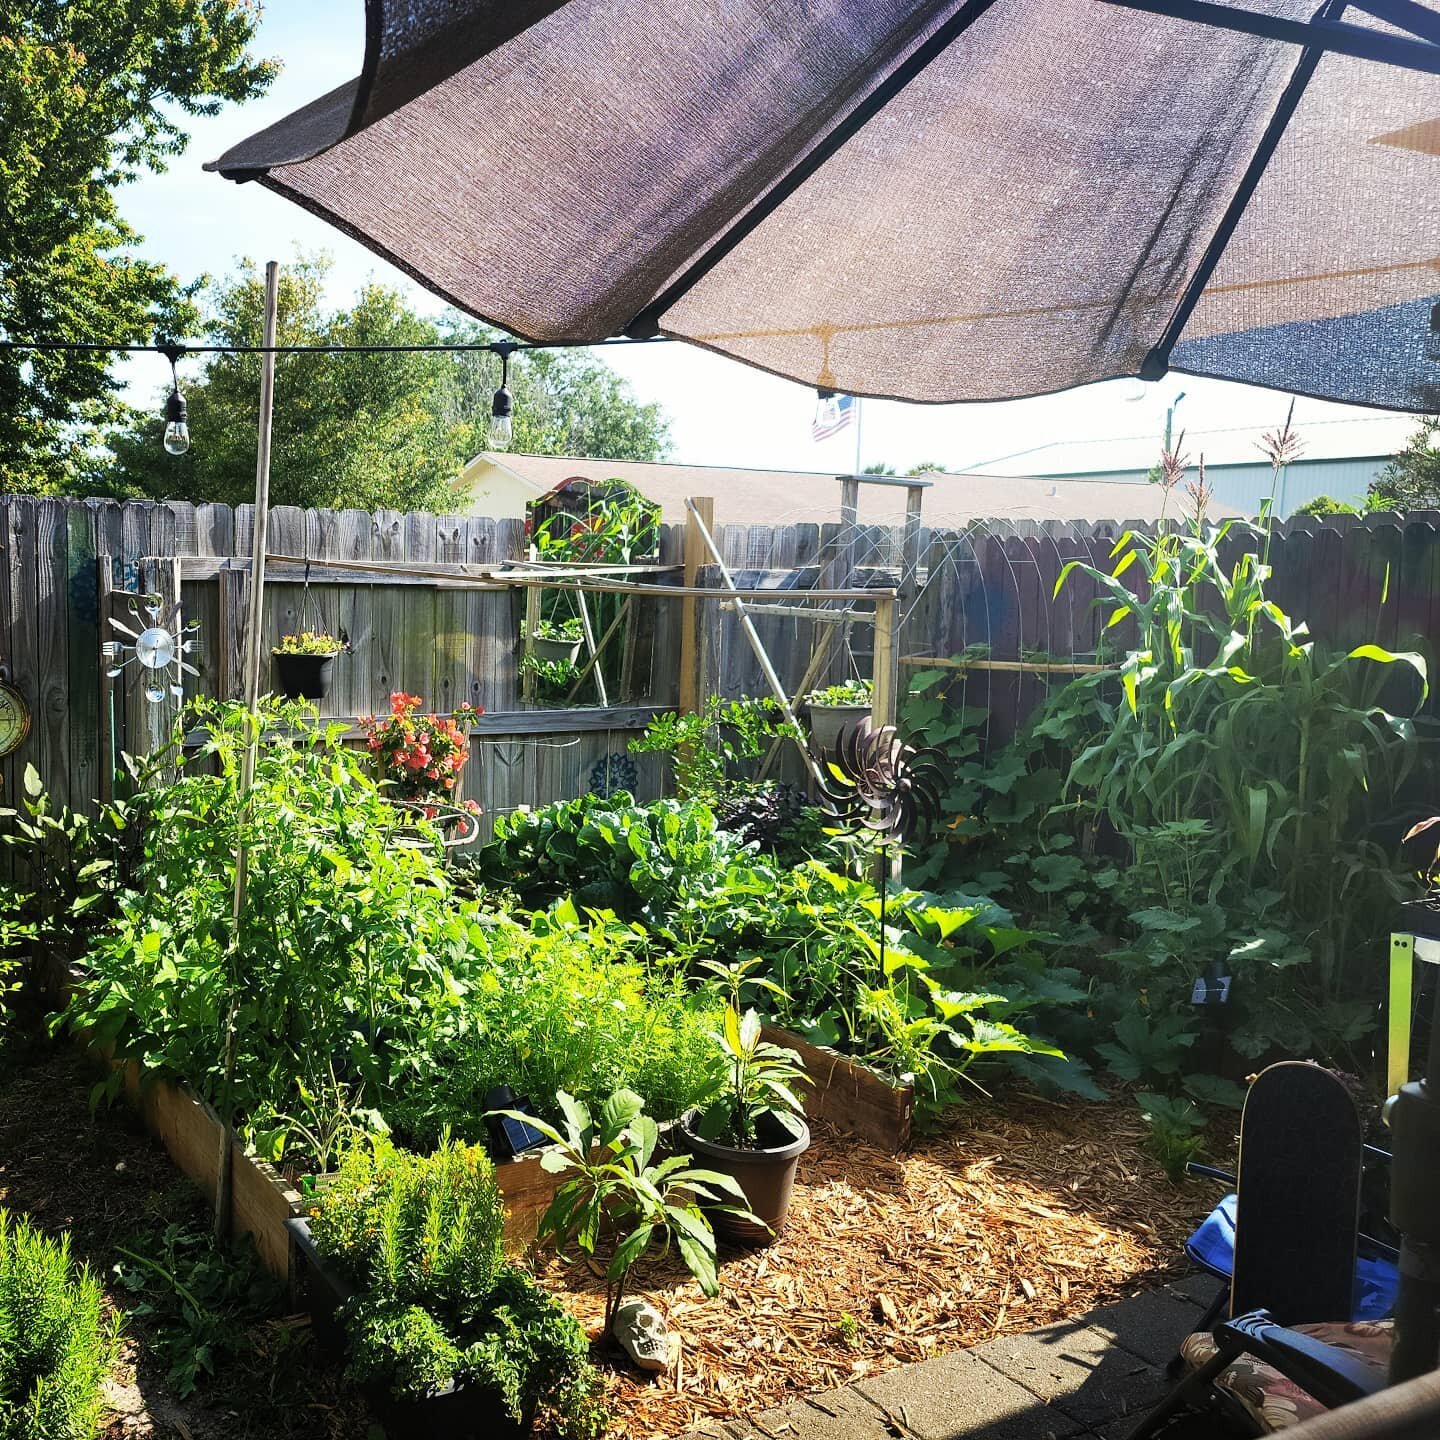 Shots of the garden before the heat kills it🍓🫐🍆🥕🌽🥔🥑🍅🌶🫑🥒🥦🧅 #trebienfoods #eatyourveggies